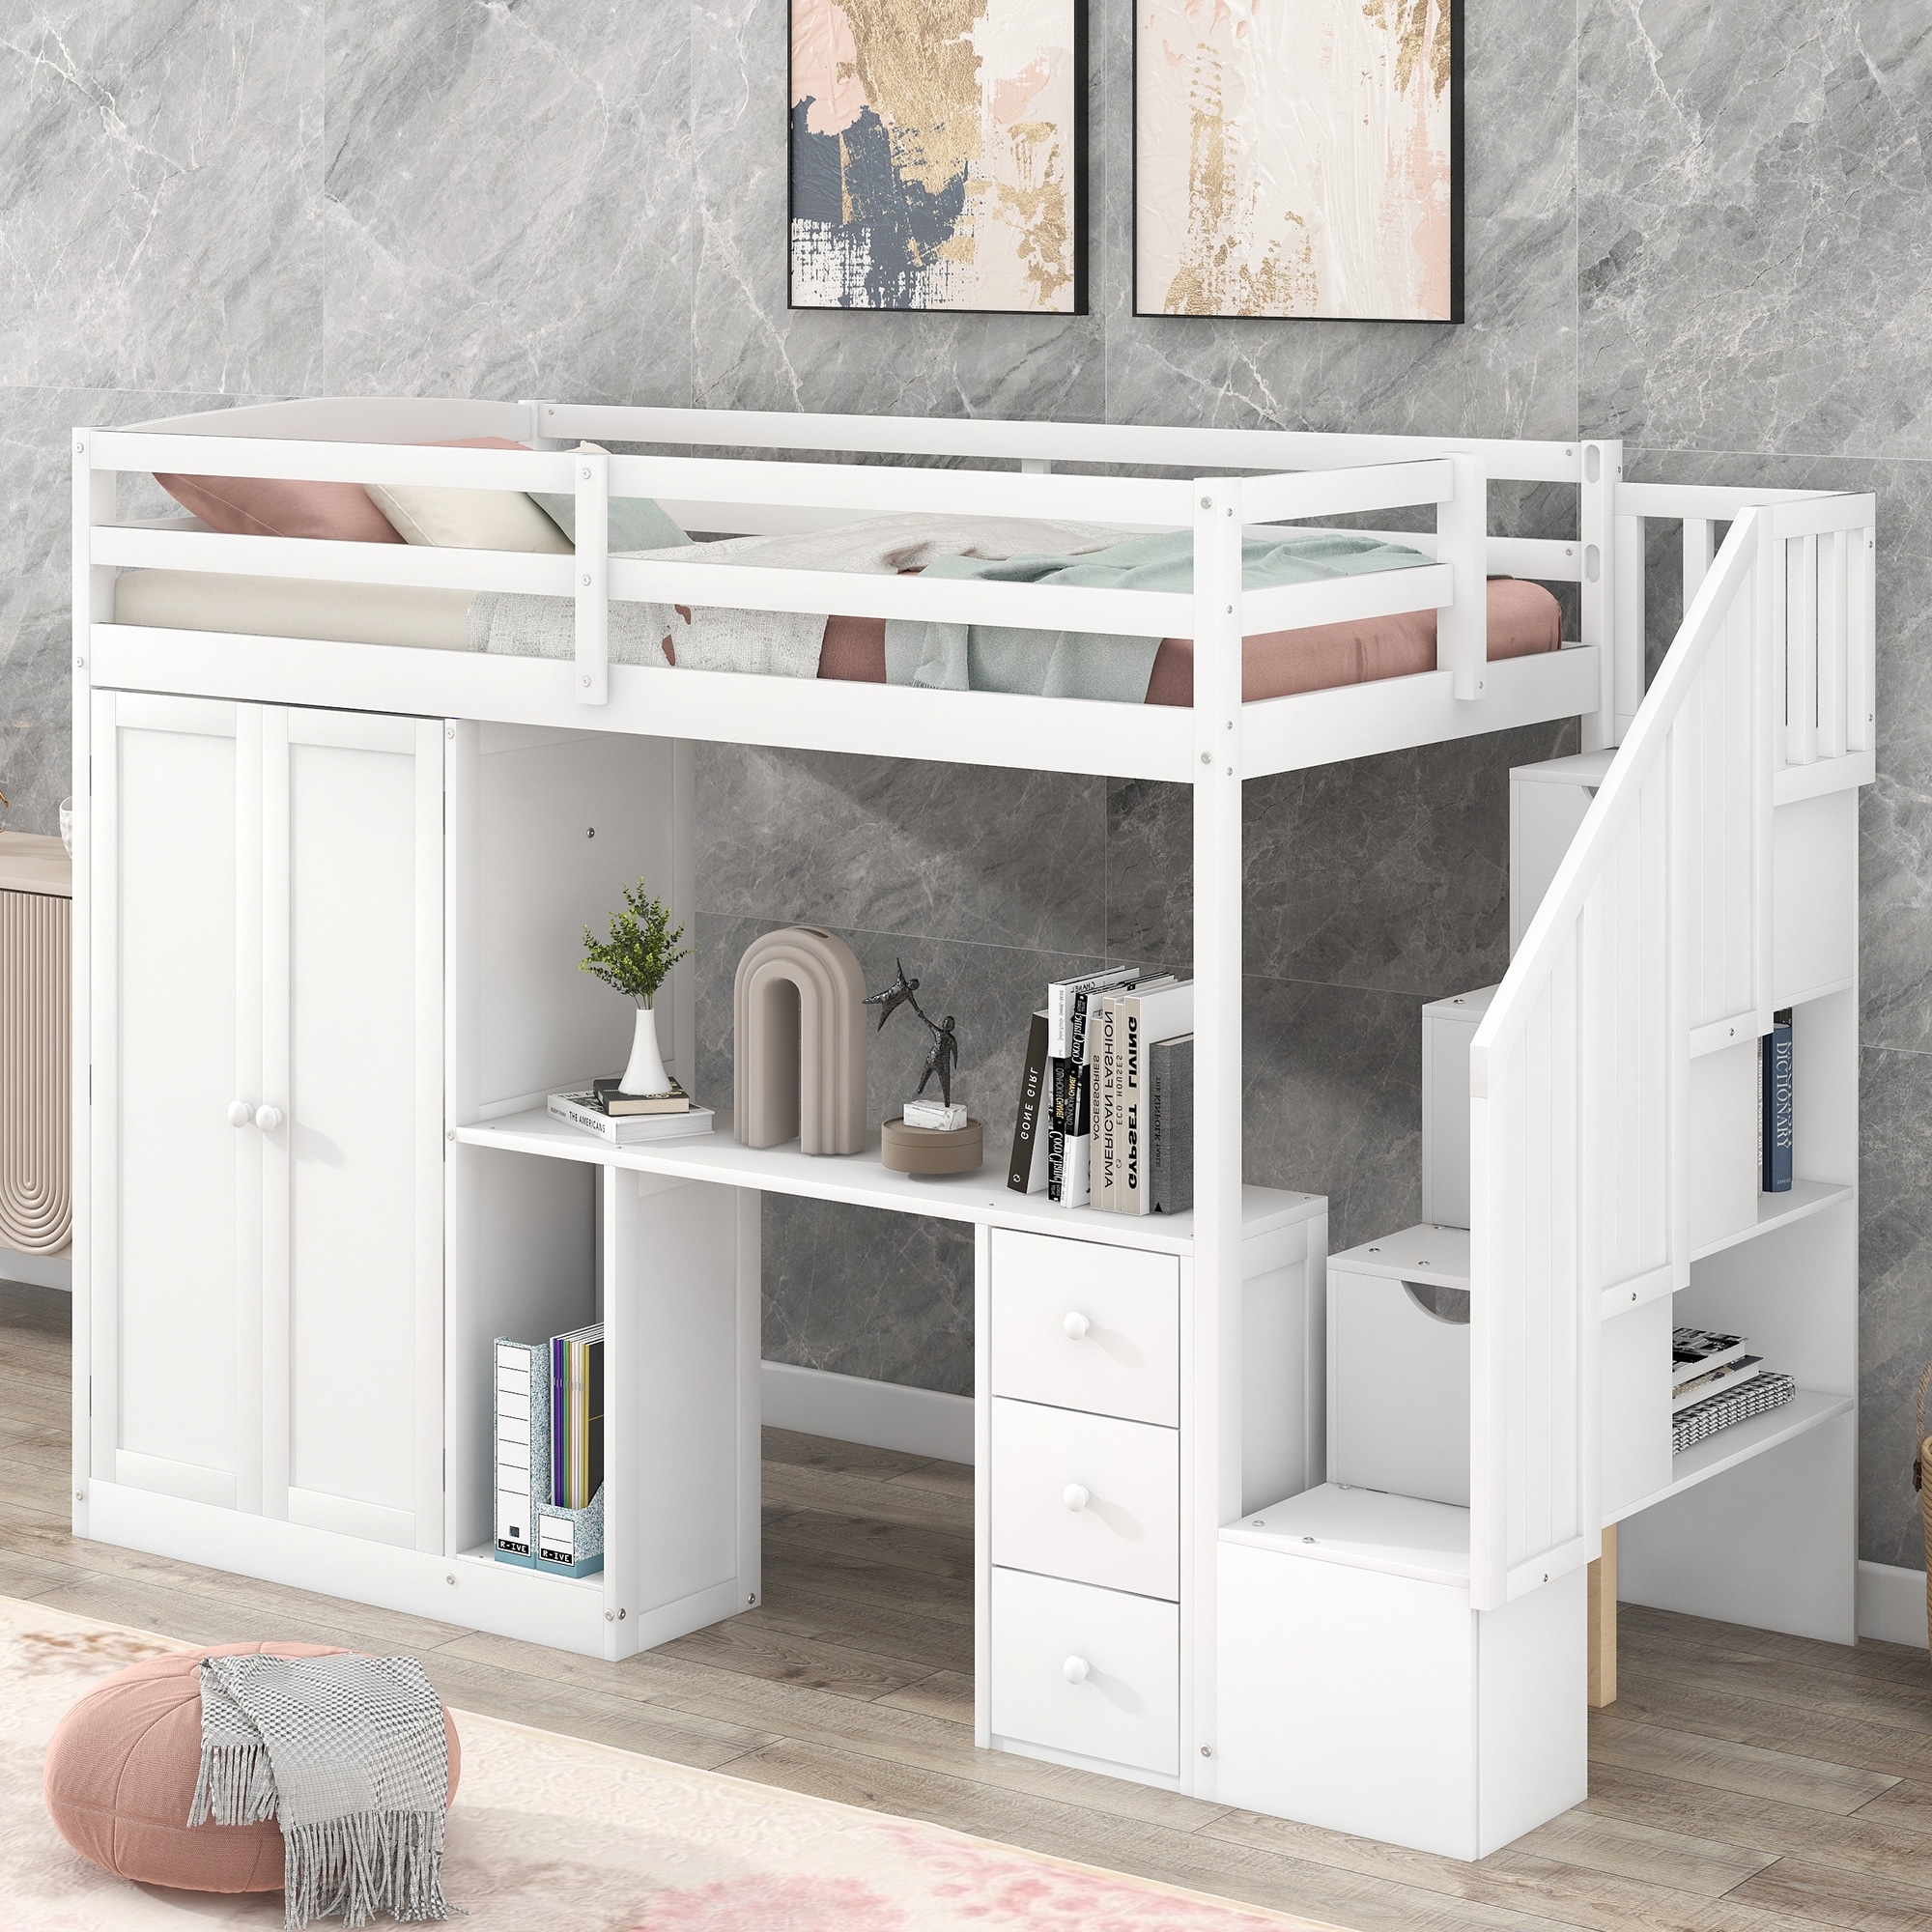  Dollhouse Wooden White Fridge Freezer with Drawer Miniature  Kitchen Furniture : Toys & Games